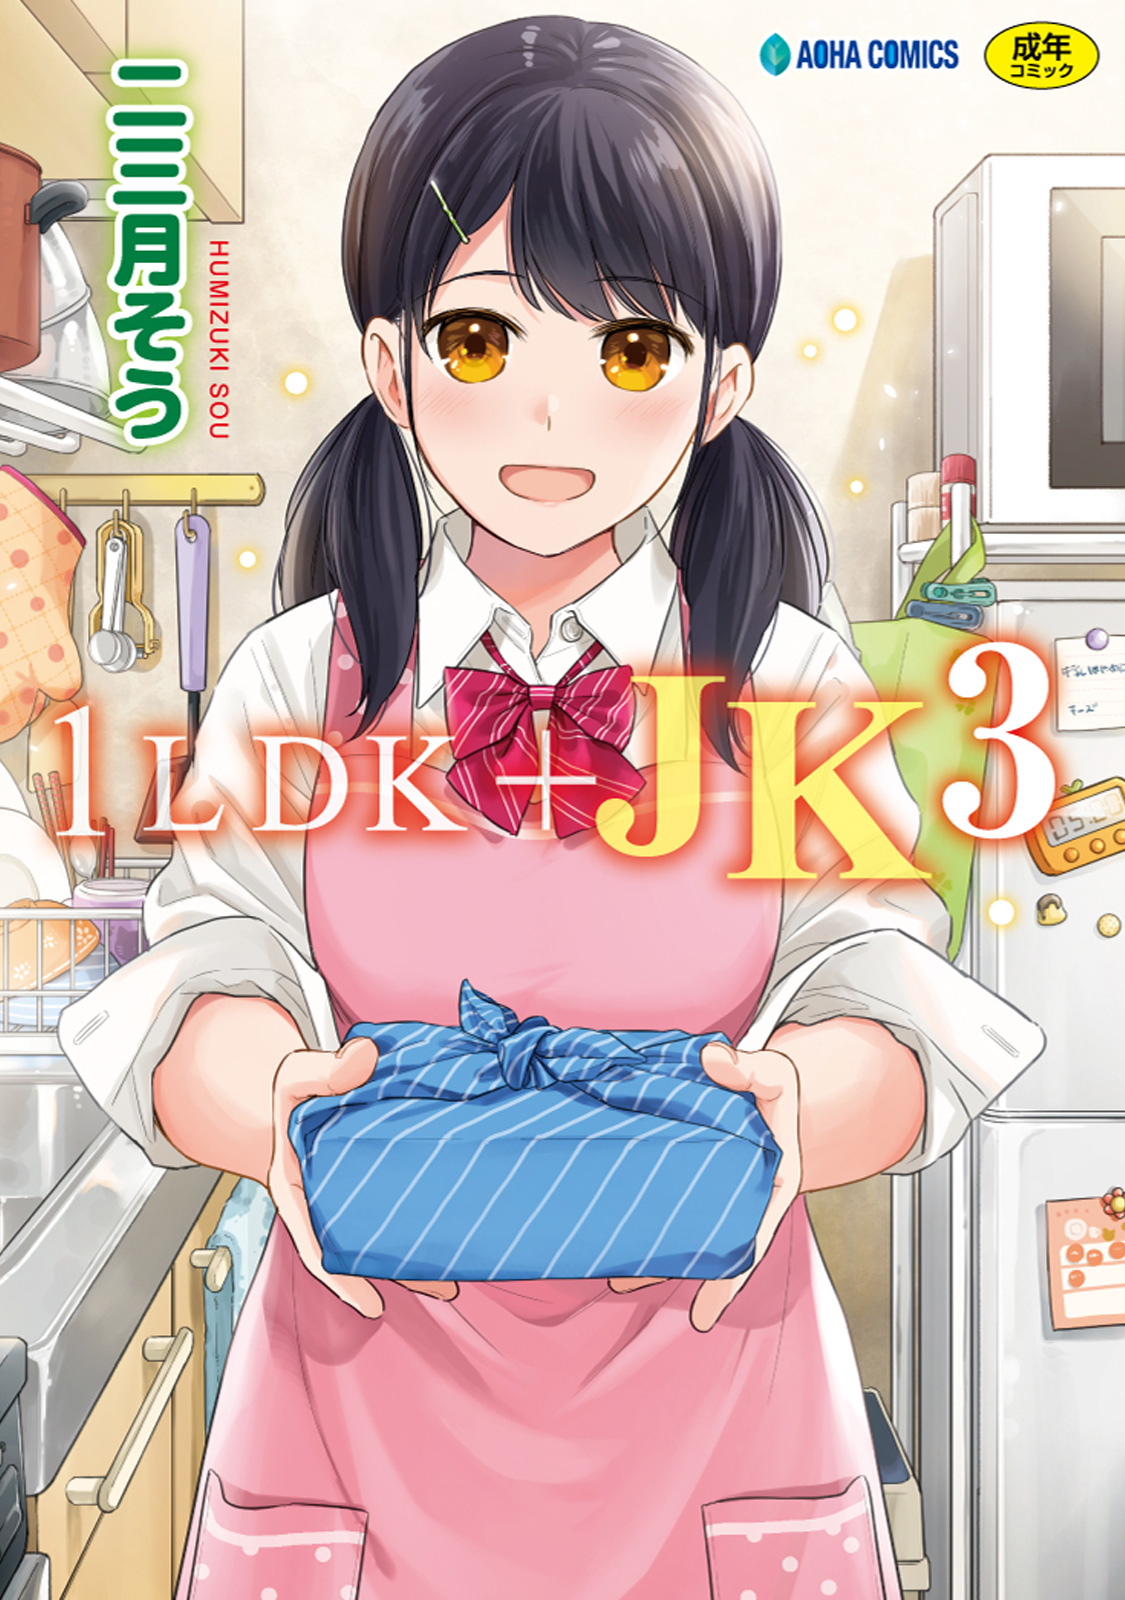 1LDK+JK３(二三月そう)